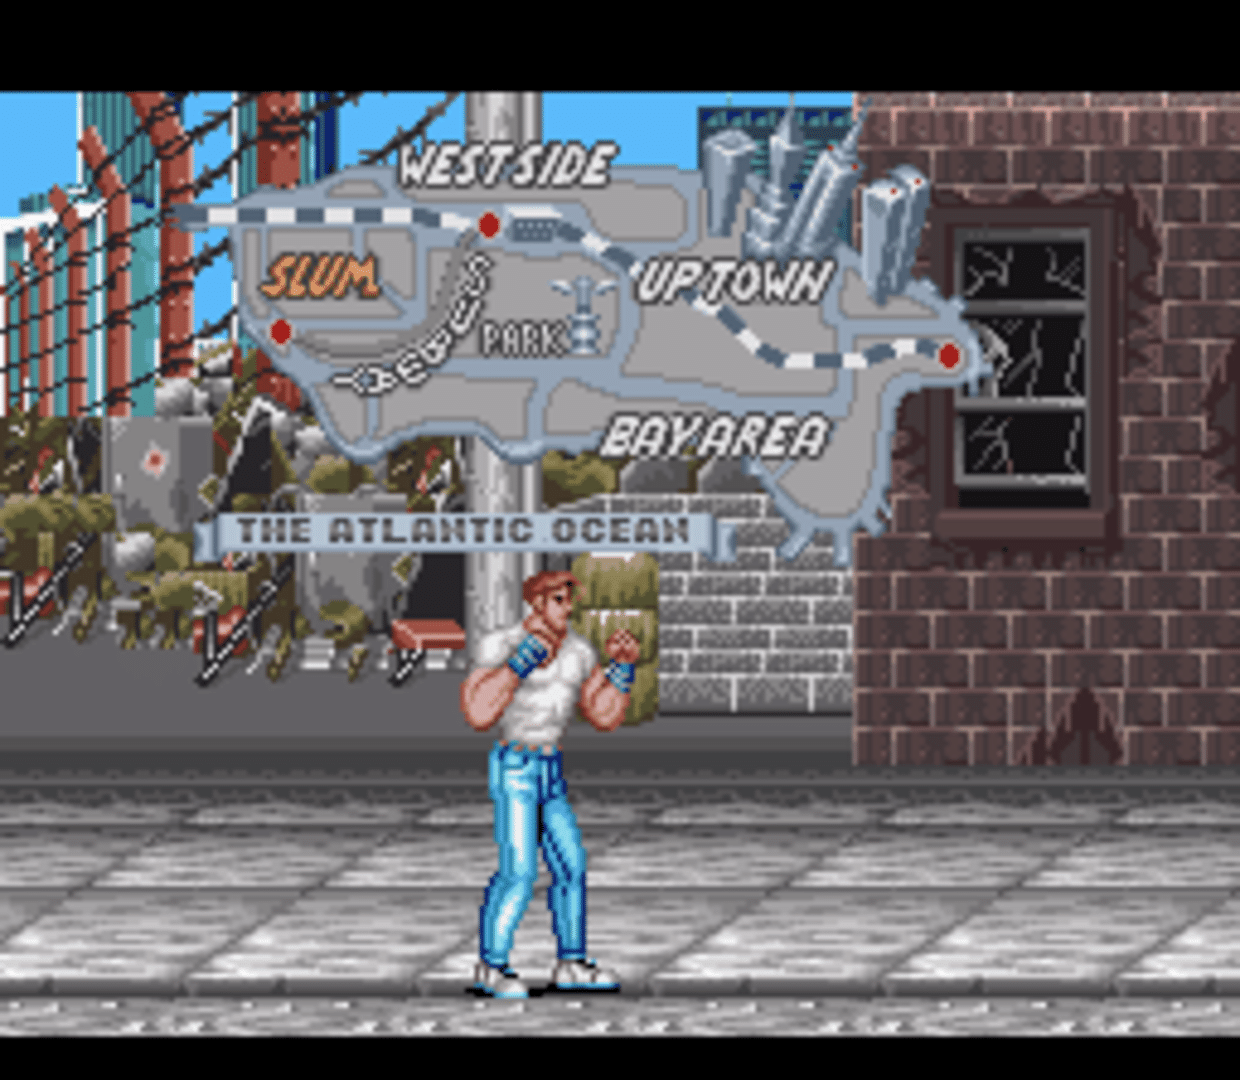 Final Fight screenshot